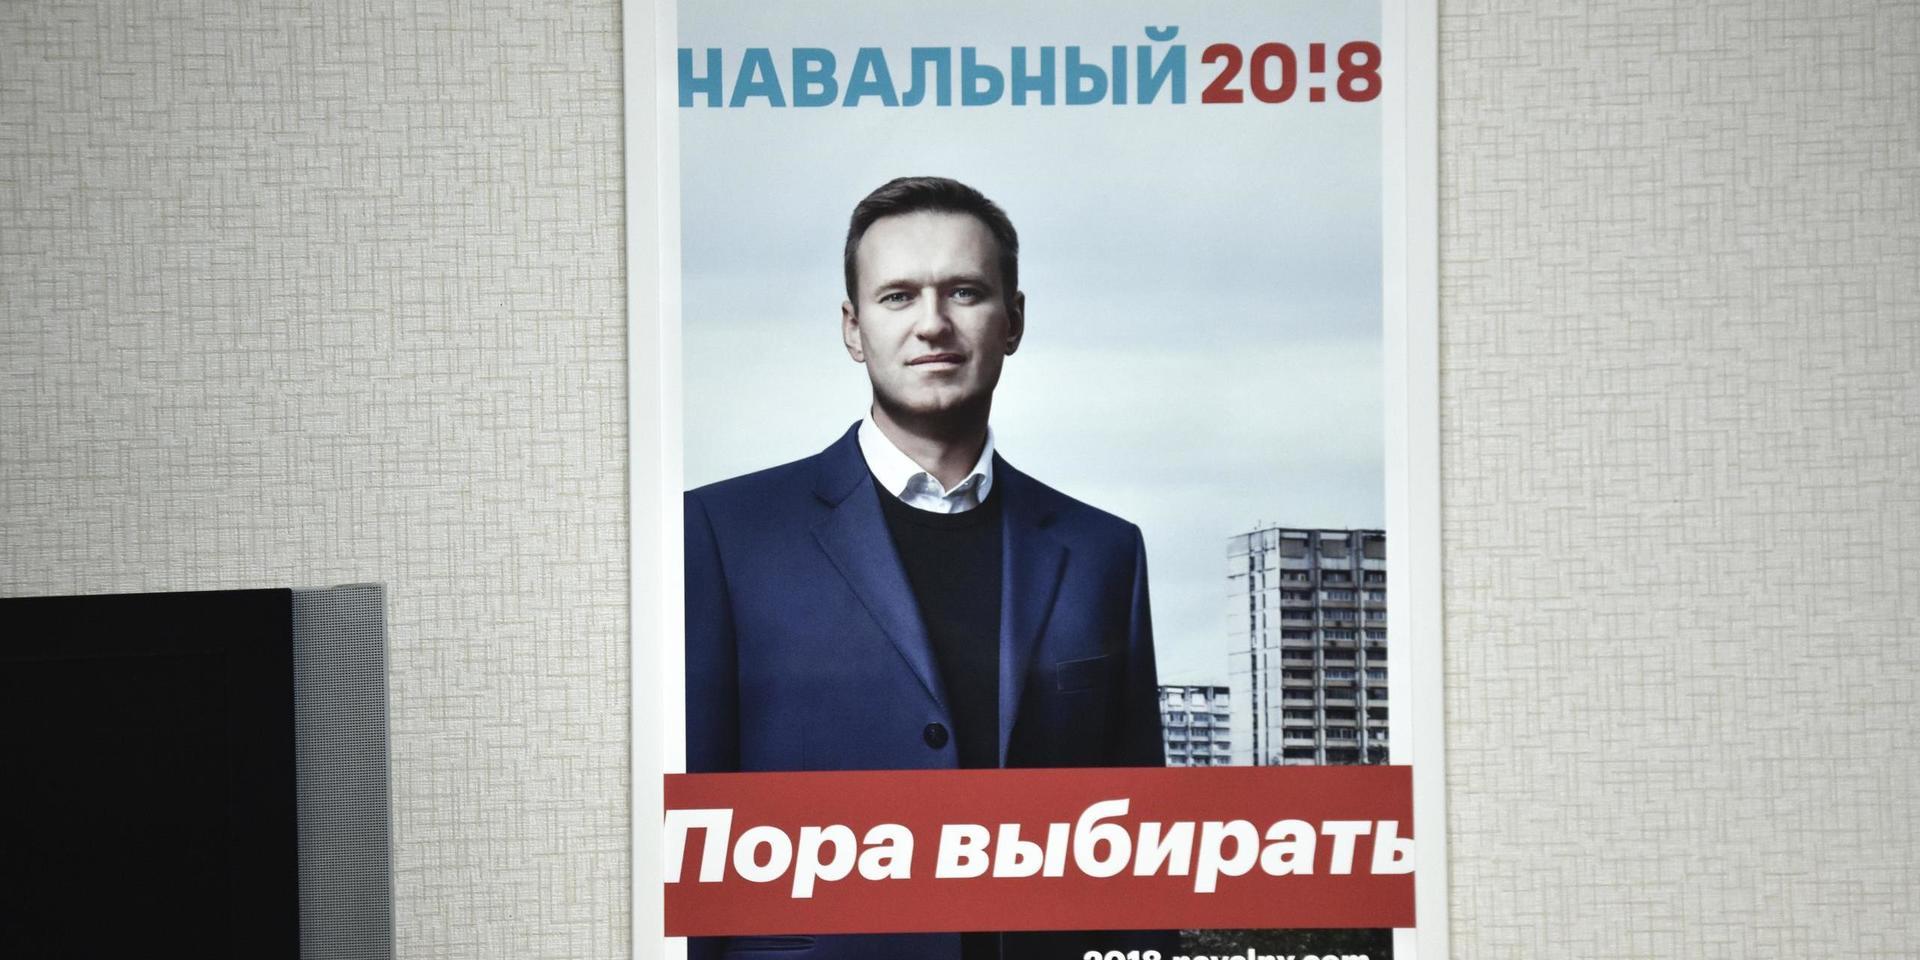 Antikorruptionsaktivisten Aleksej Navalnyj får inte ställa upp i årets presidentval. 